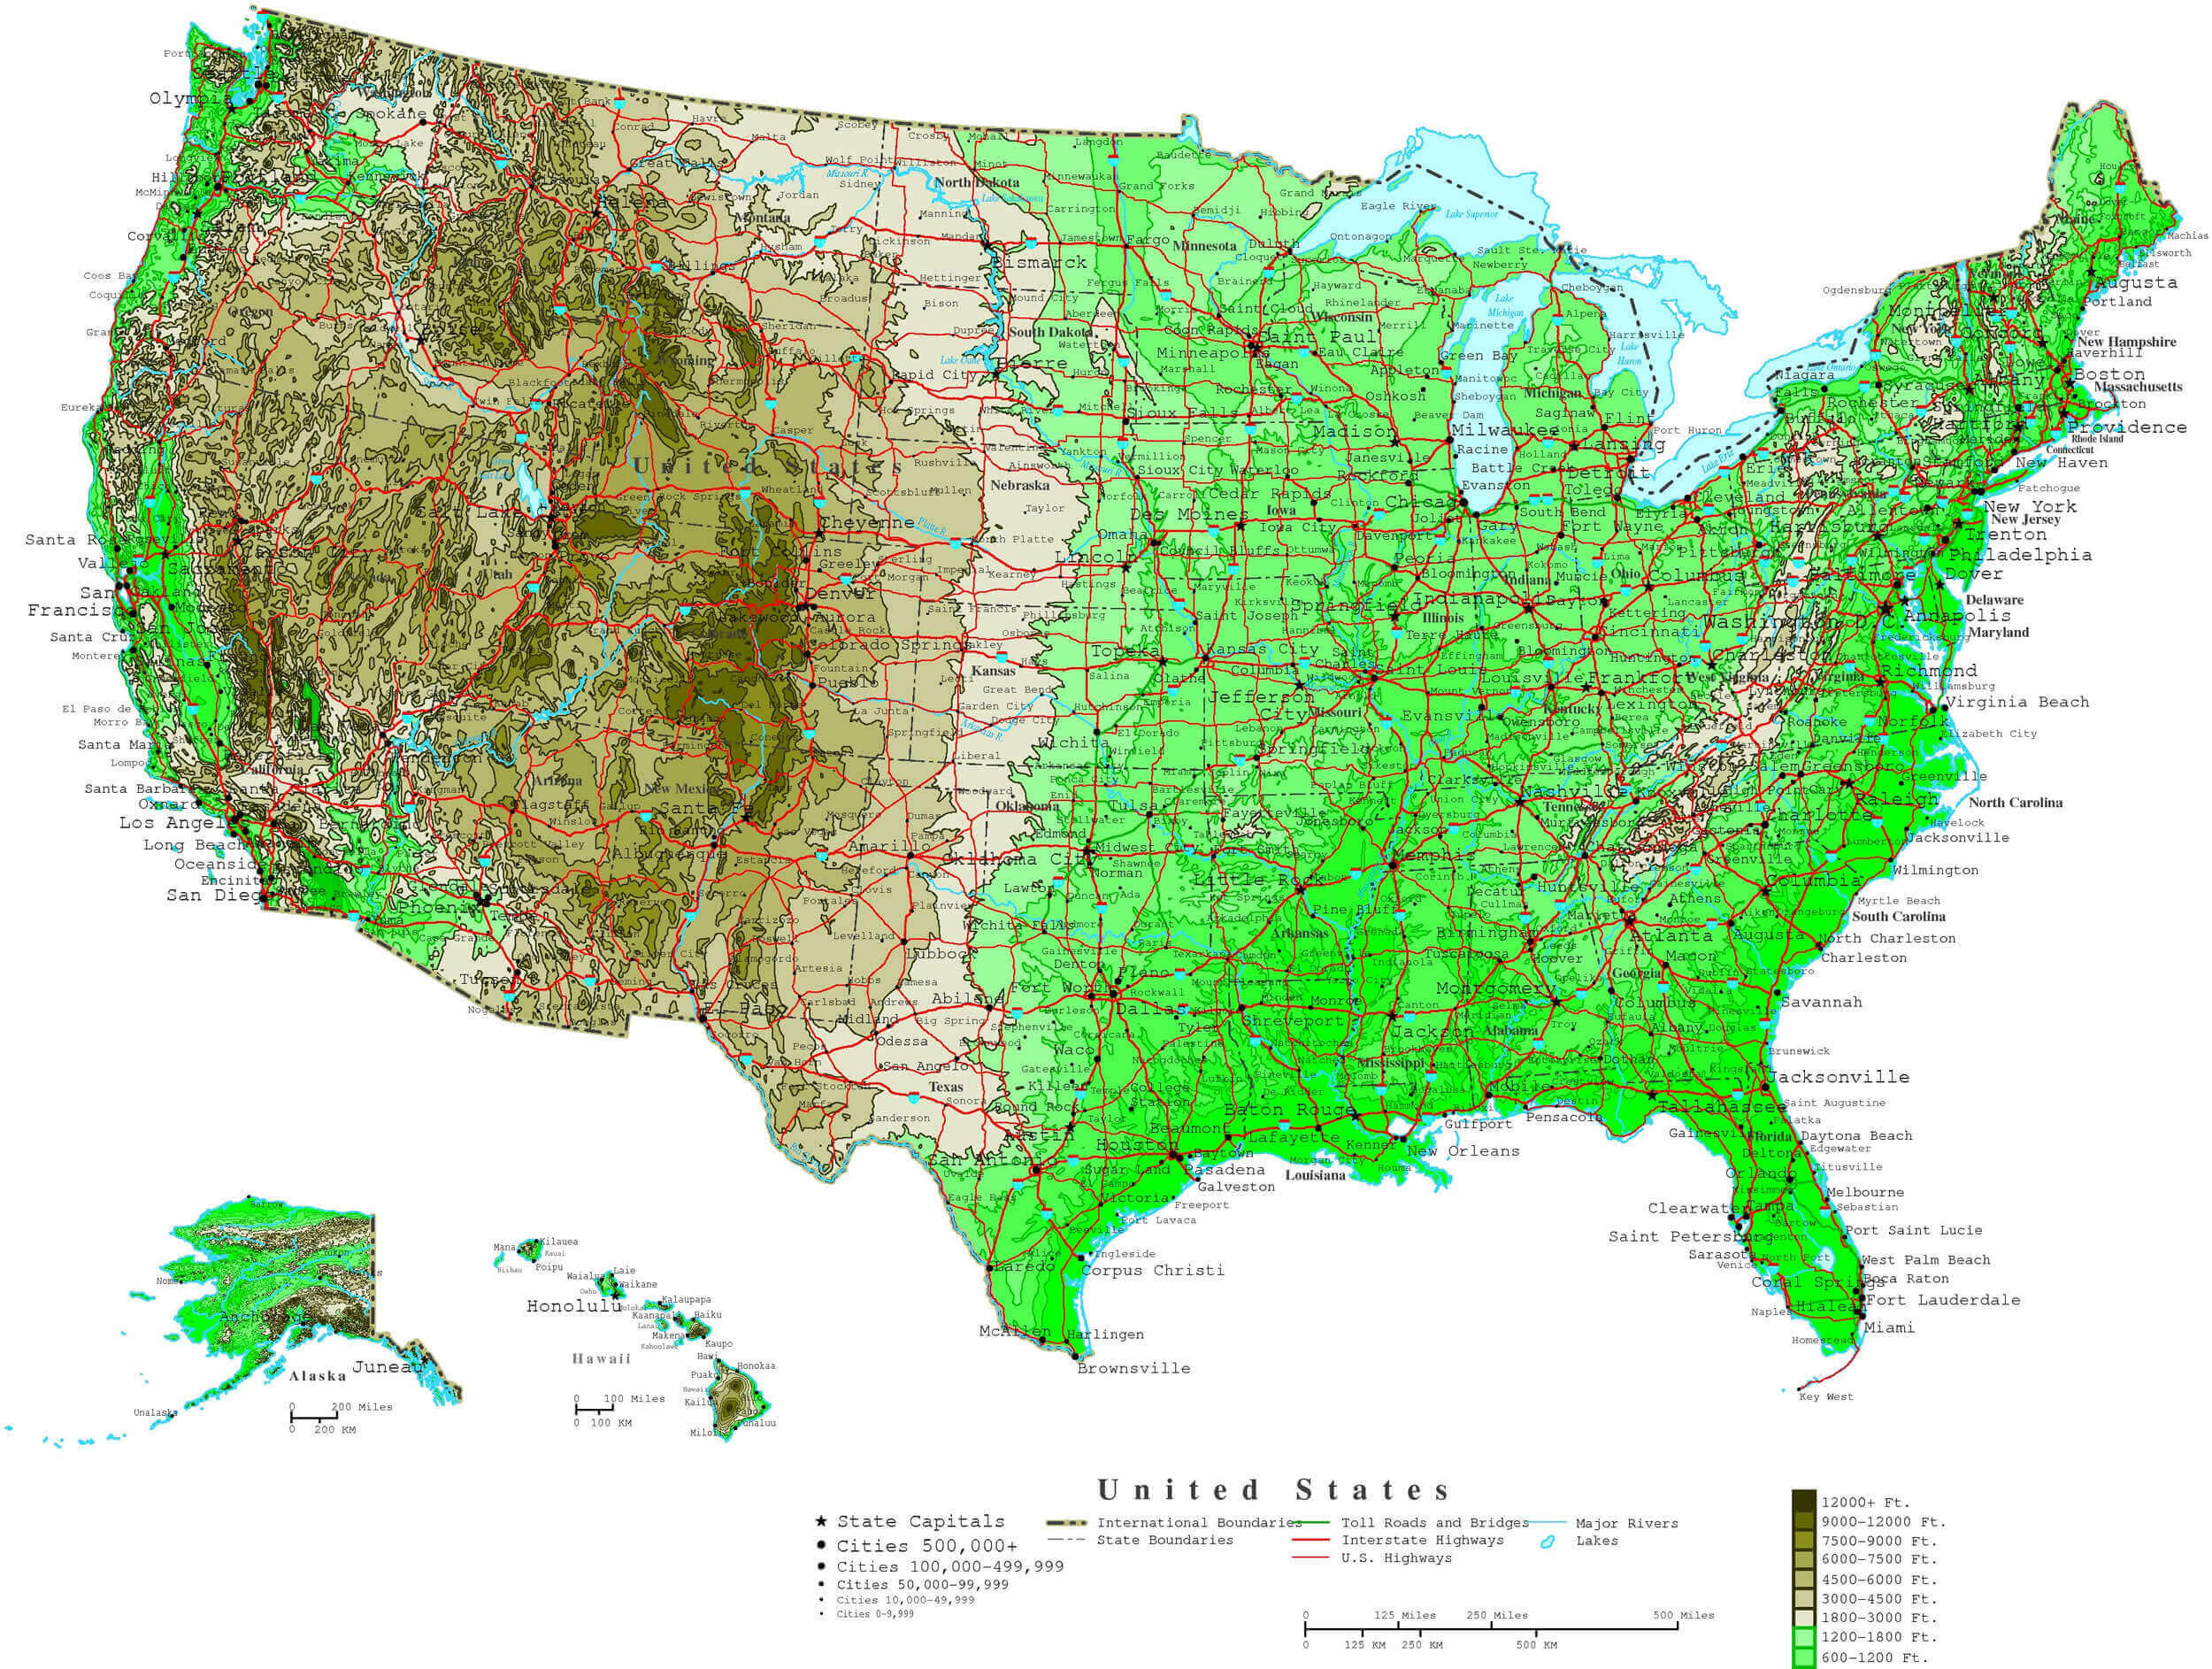 black population density map us